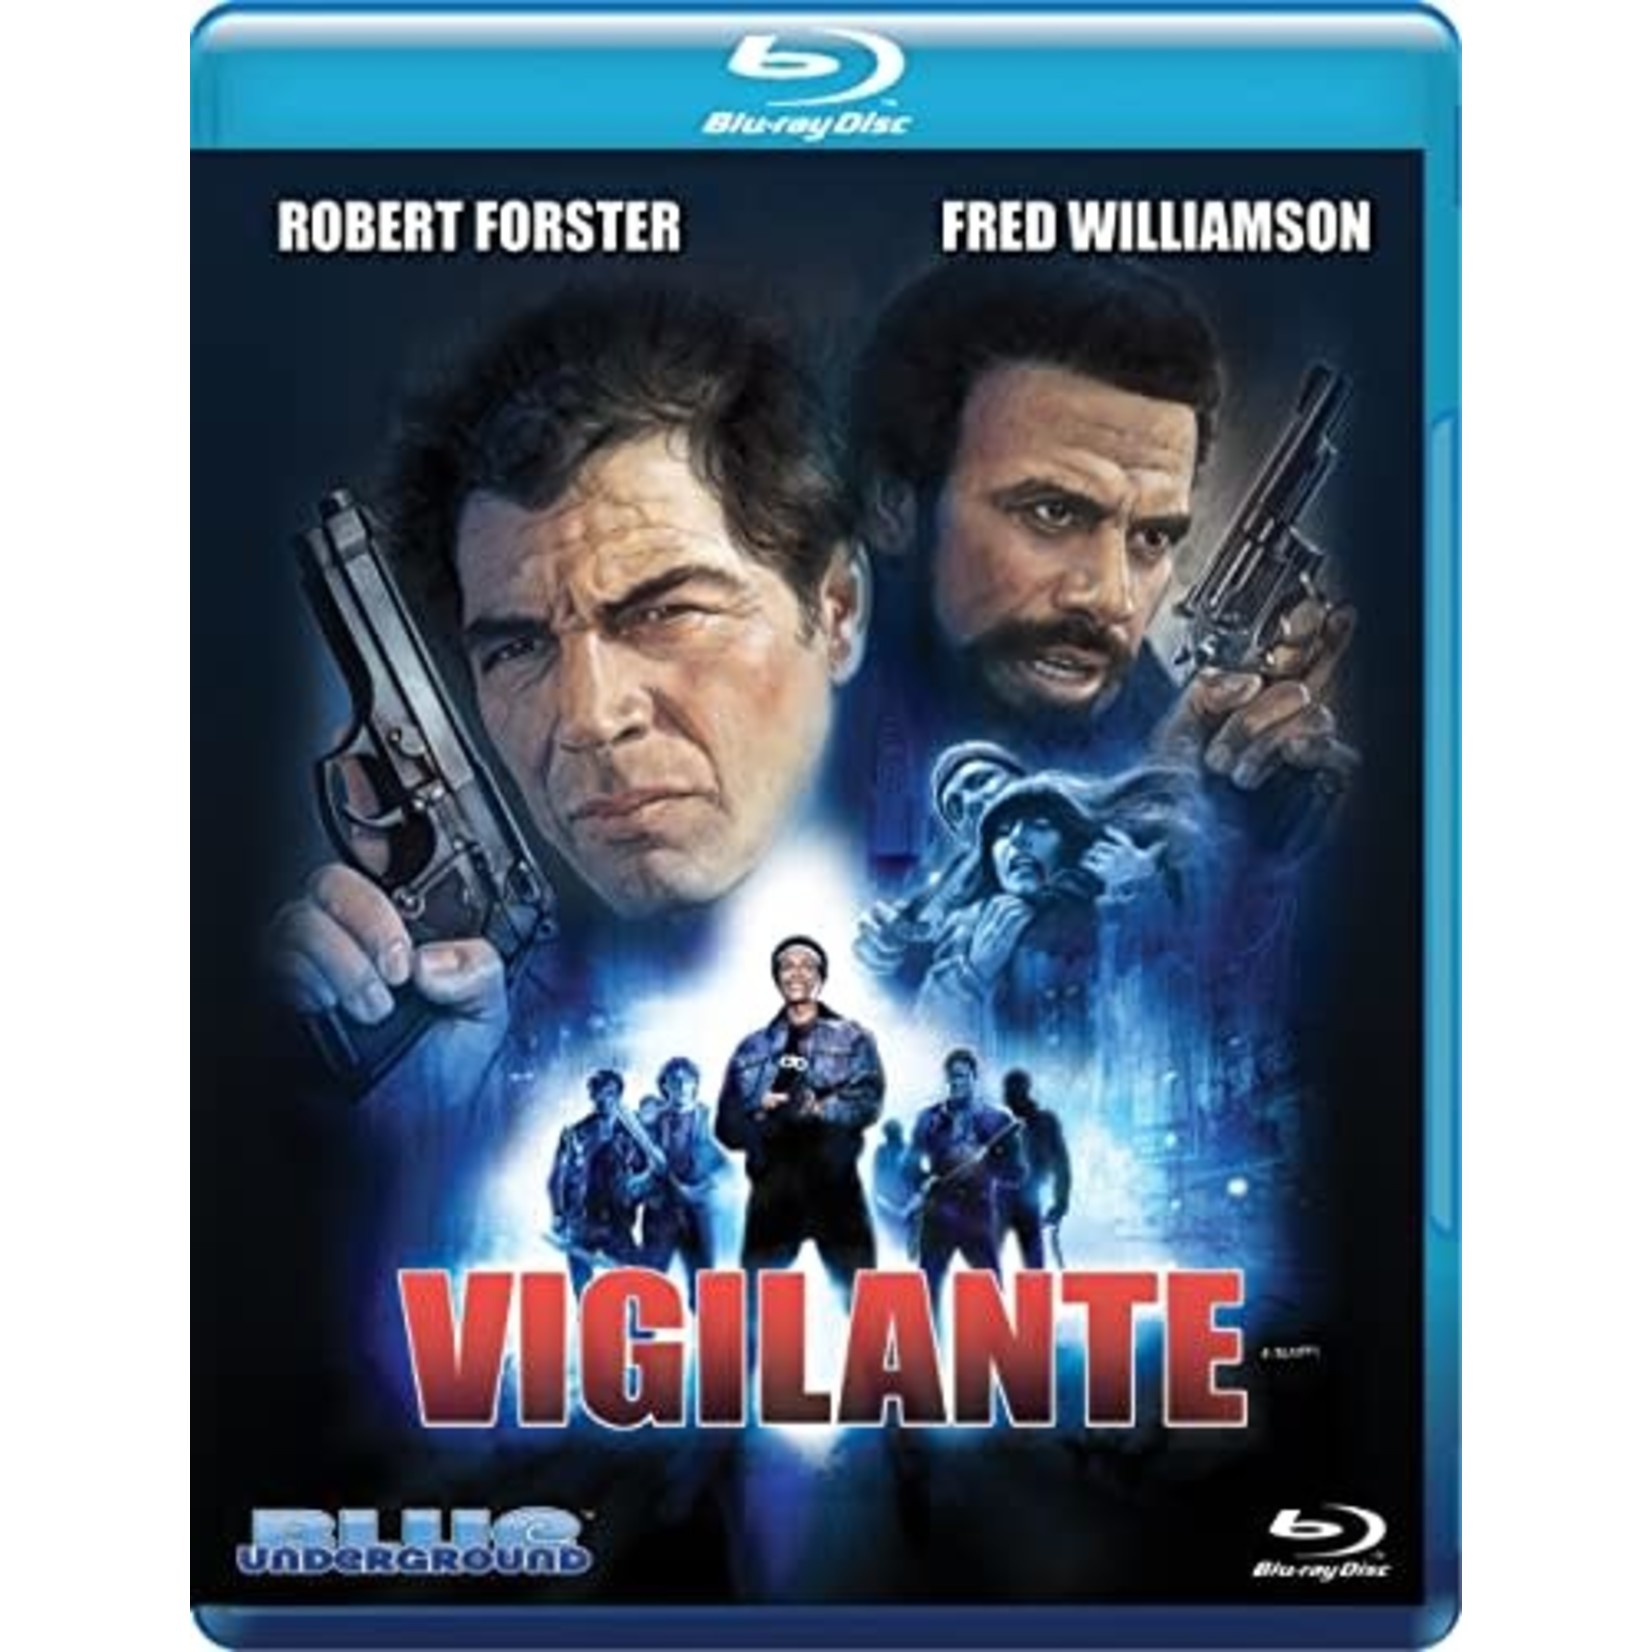 Vigilante (1983) [BRD]